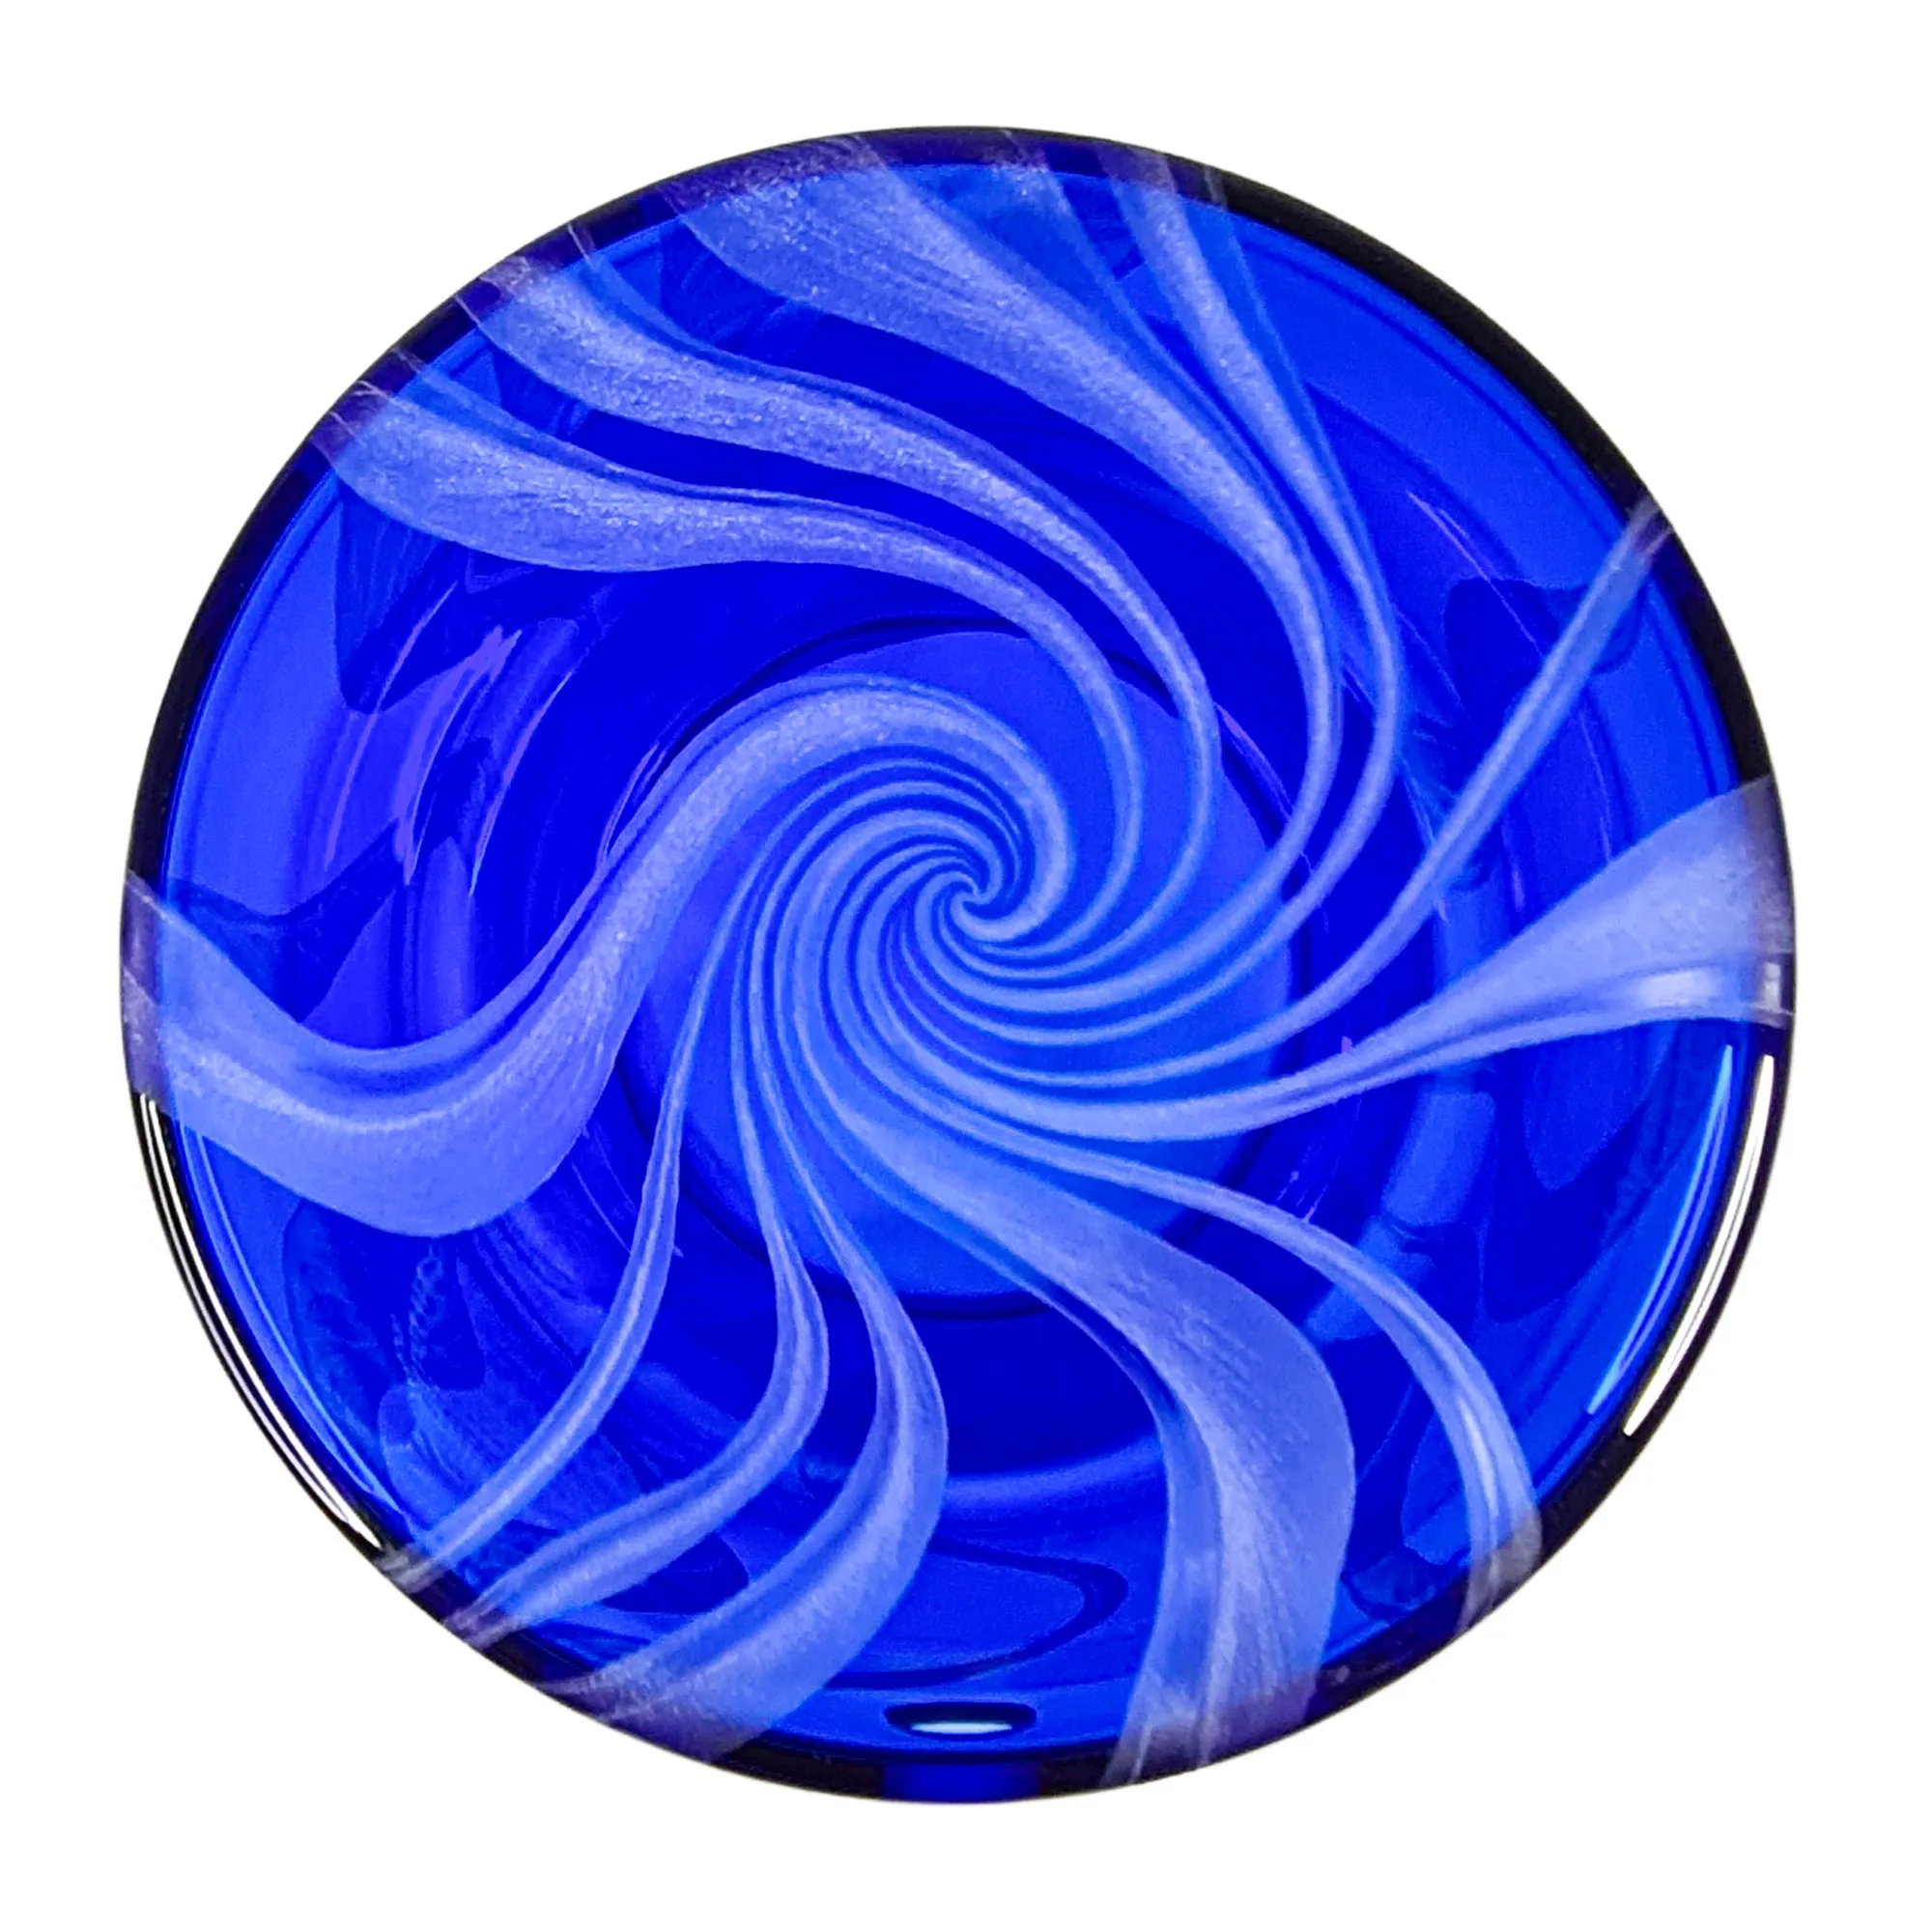 Vorratstank für Wasserfilter Mini mit einer Handgravur. Die Gravur zeigt, auf blauem Glas. Wellen die in welligen Linien gerade am Glas noch oben gehen, die Wellen verteilen sich rund um das runde Glas. Ansicht von schräg unten.